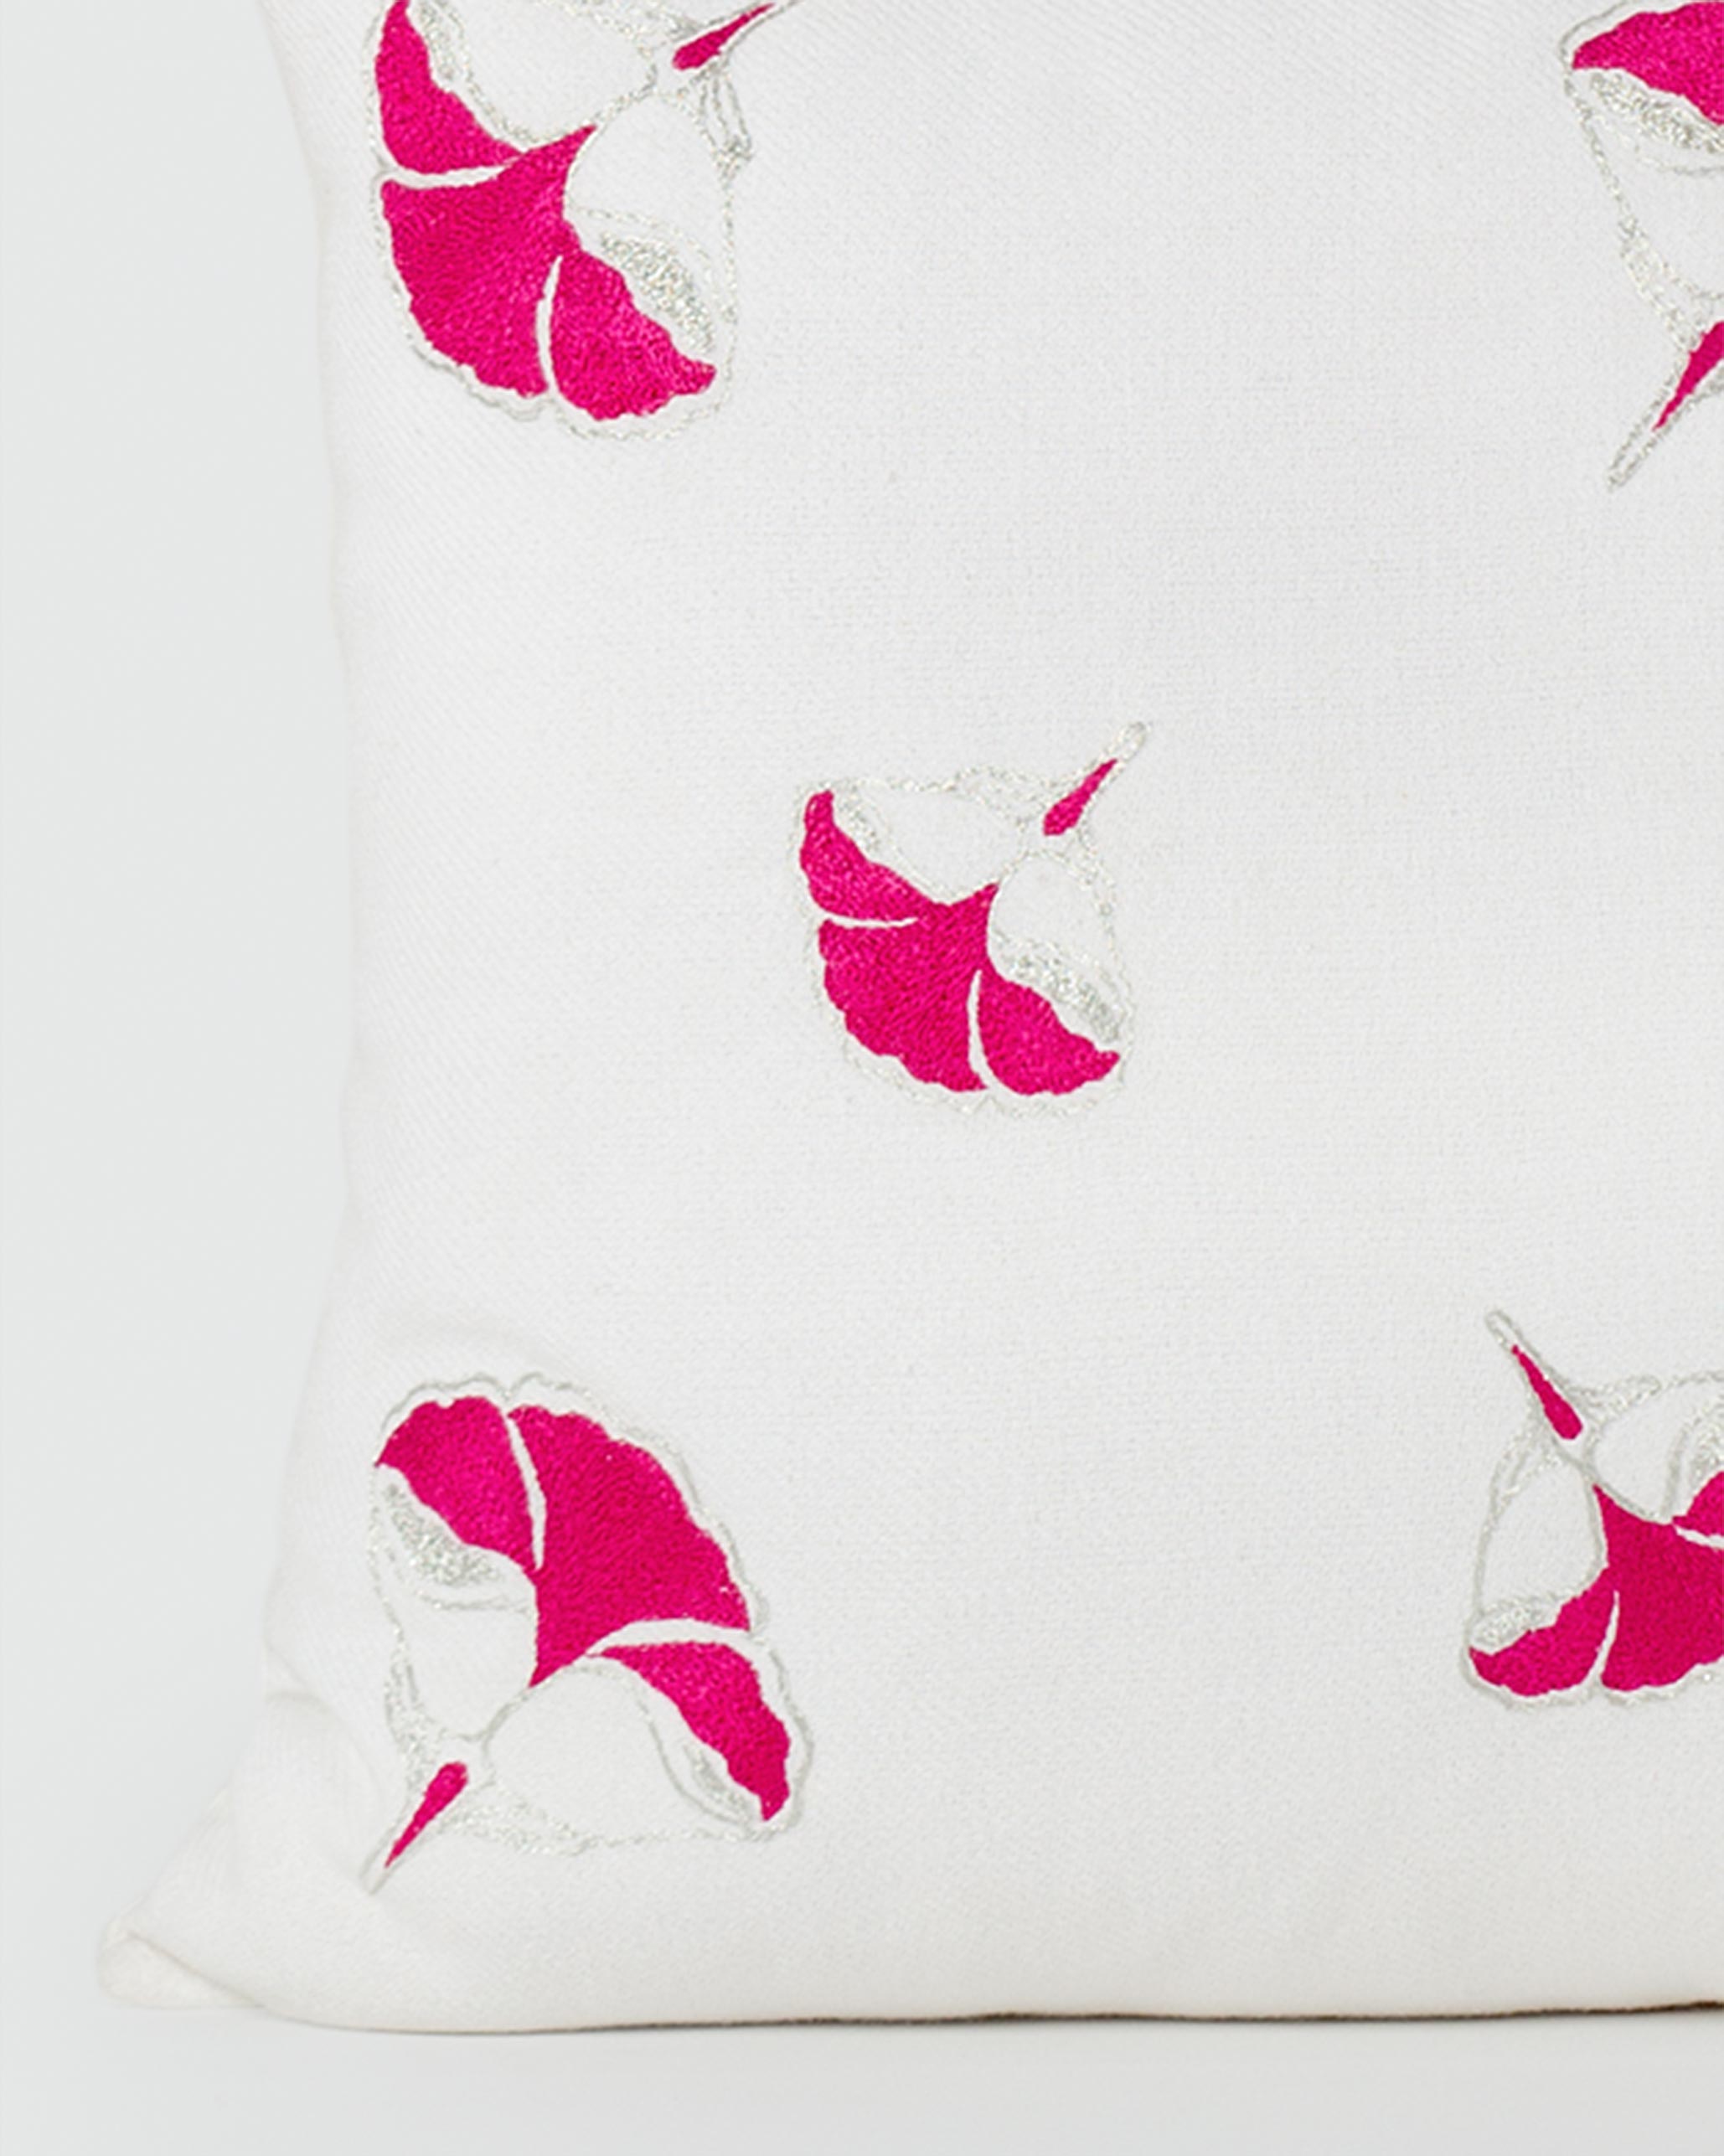 Frangipani Embroidered Cushion Cover - Fuchsia